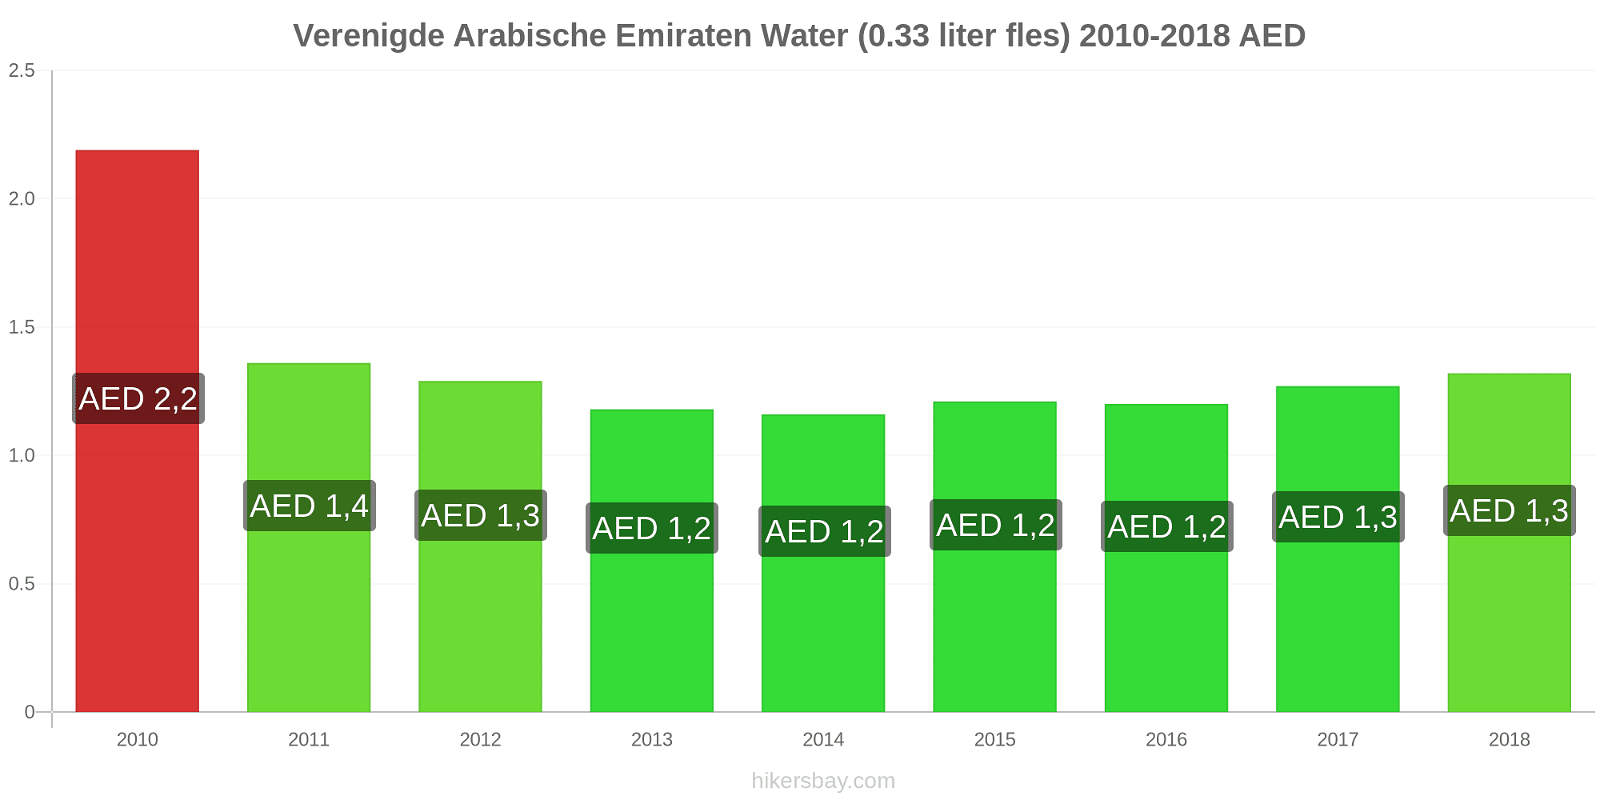 Verenigde Arabische Emiraten prijswijzigingen Water (0,33 liter fles) hikersbay.com